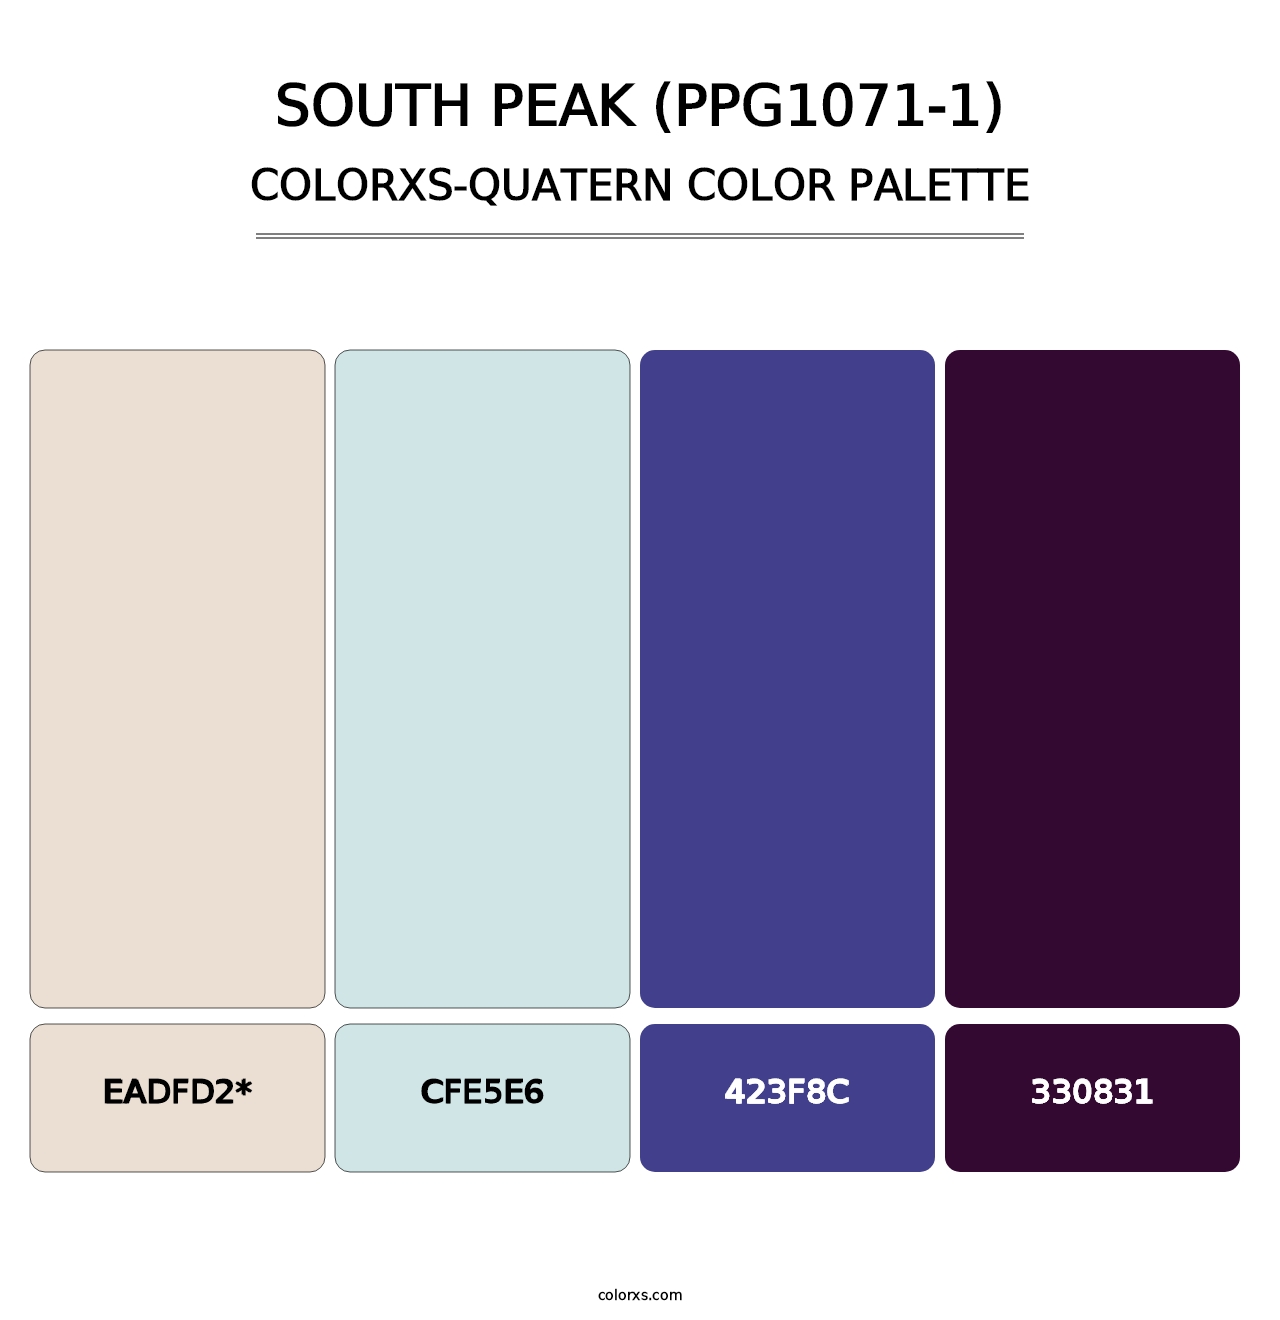 South Peak (PPG1071-1) - Colorxs Quatern Palette